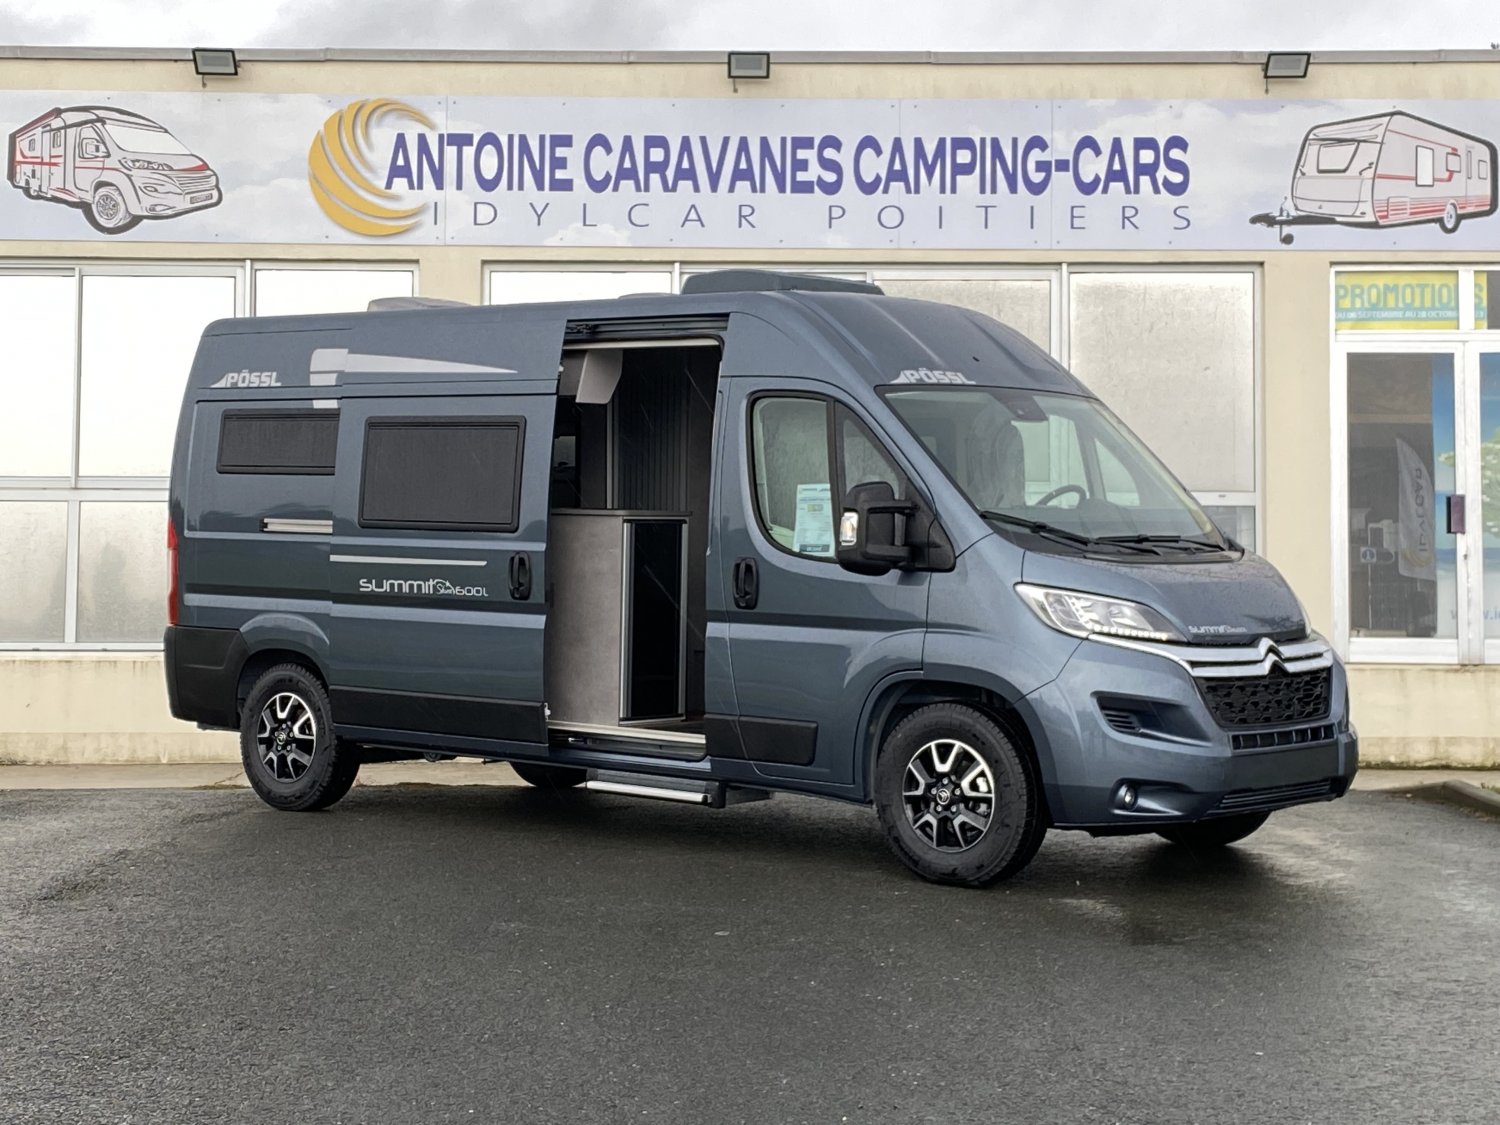 Antoine Caravanes et Camping Car - Possl SUMMIT 600L SHINE à 68 720€